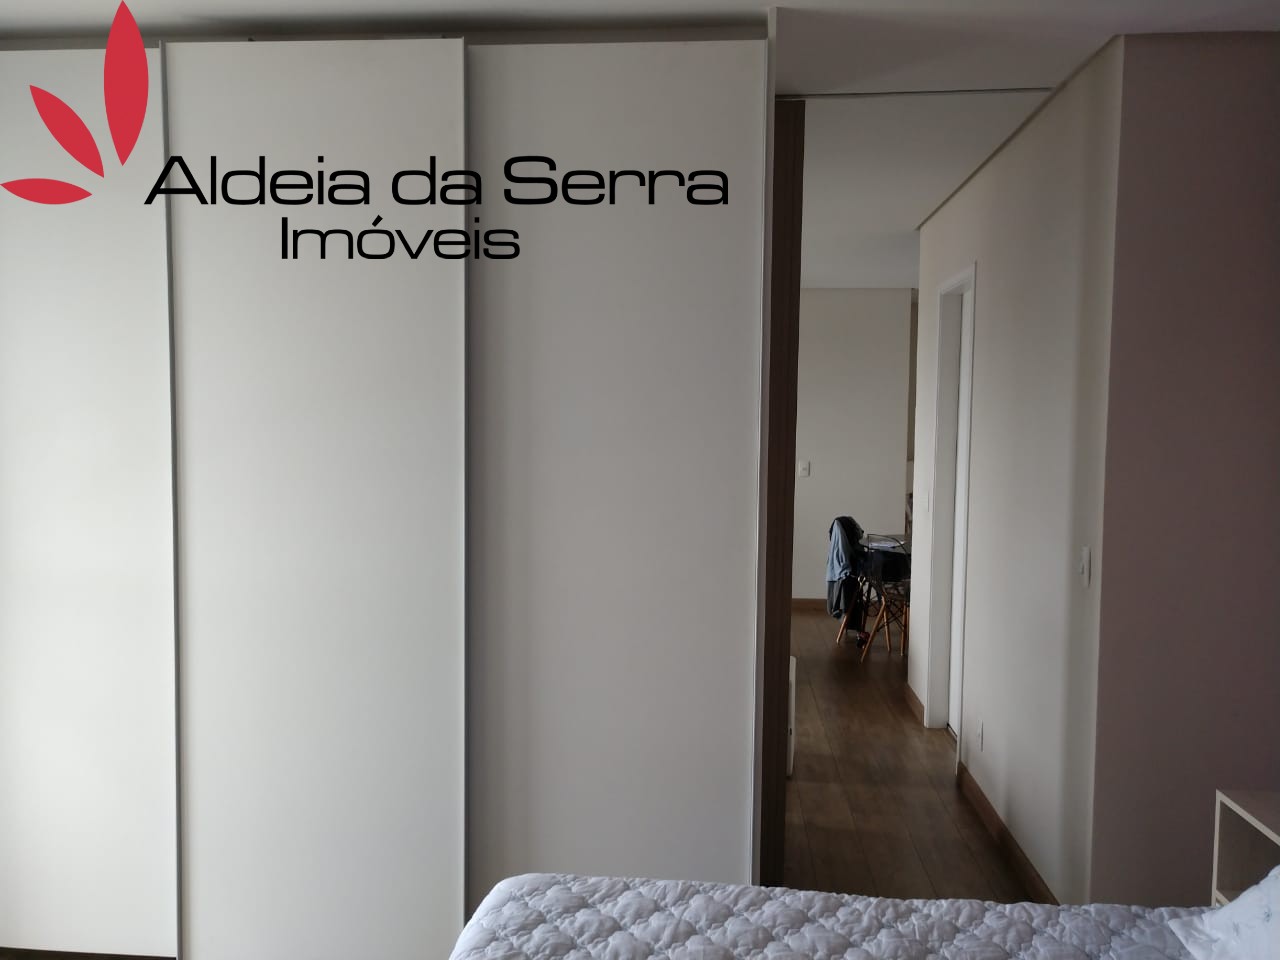 /admin/imoveis/fotos/IMG-20211203-WA0048.jpg Aldeia da Serra Imoveis